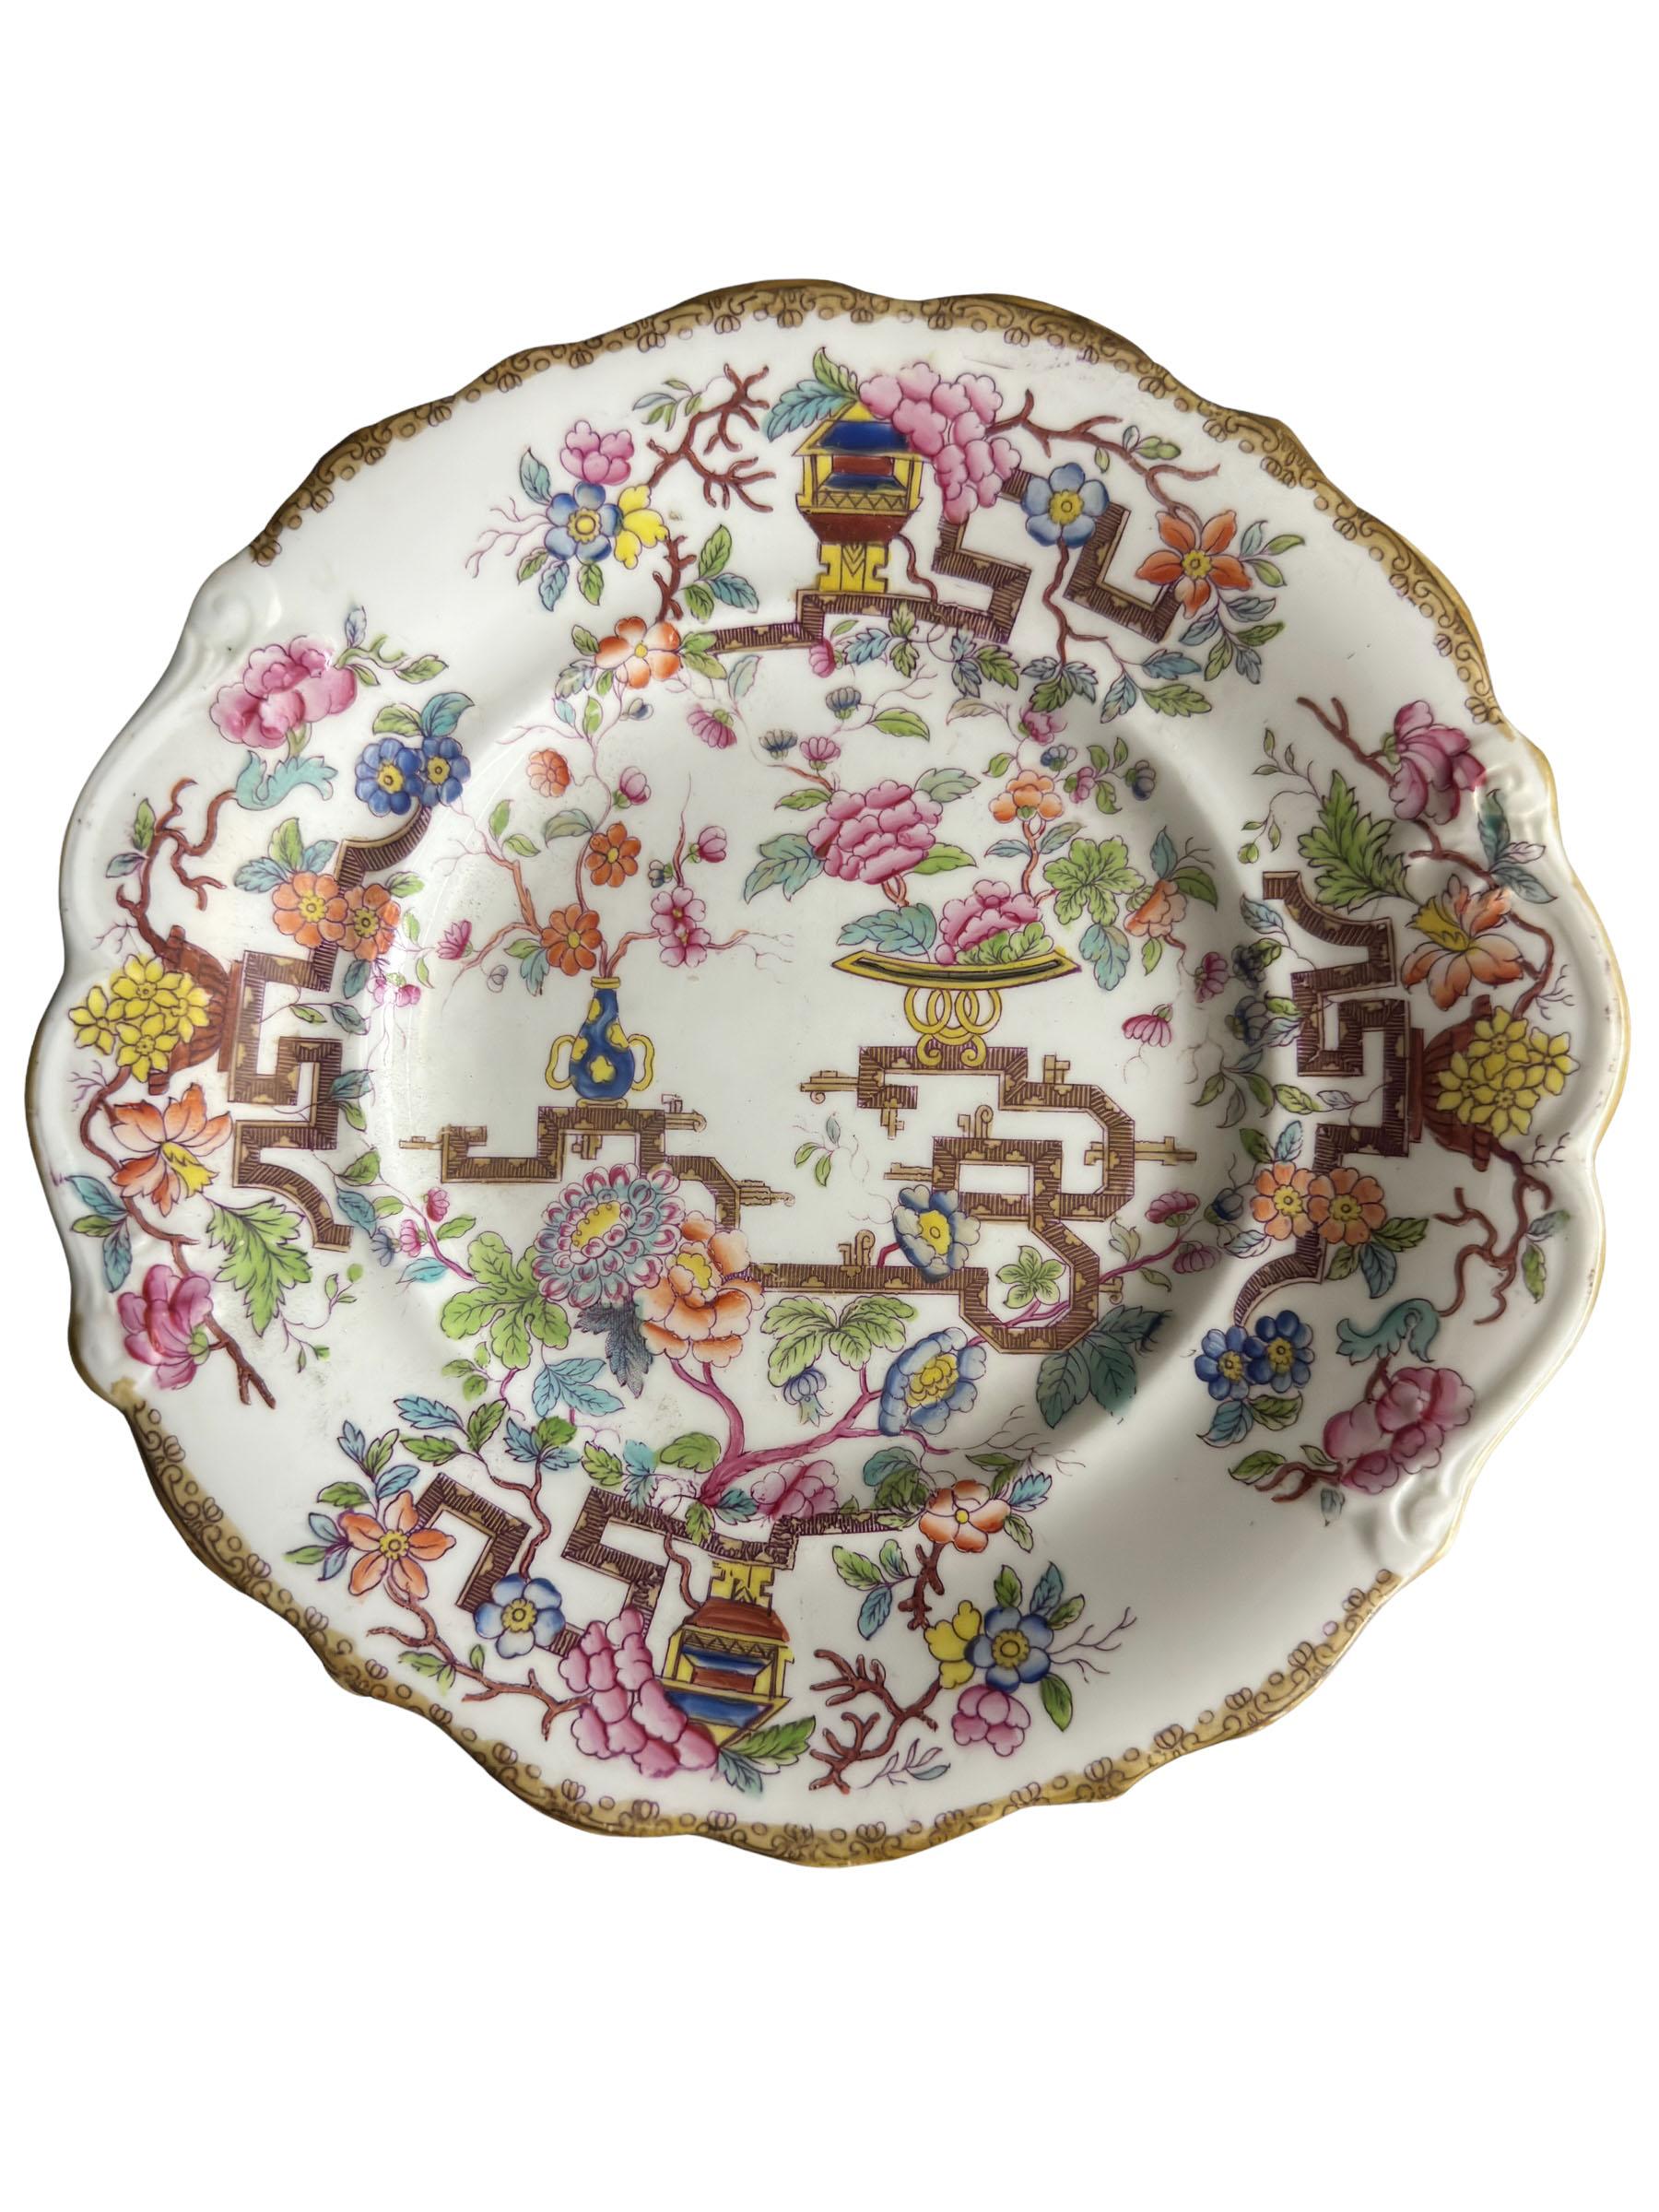 Assiette ancienne de chinoiserie Minton à bord festonné et doré. Arbre chinois avec des vases de pivoines et de fleurs peints à la main. Circa 1870s, Angleterre. Non signée.
